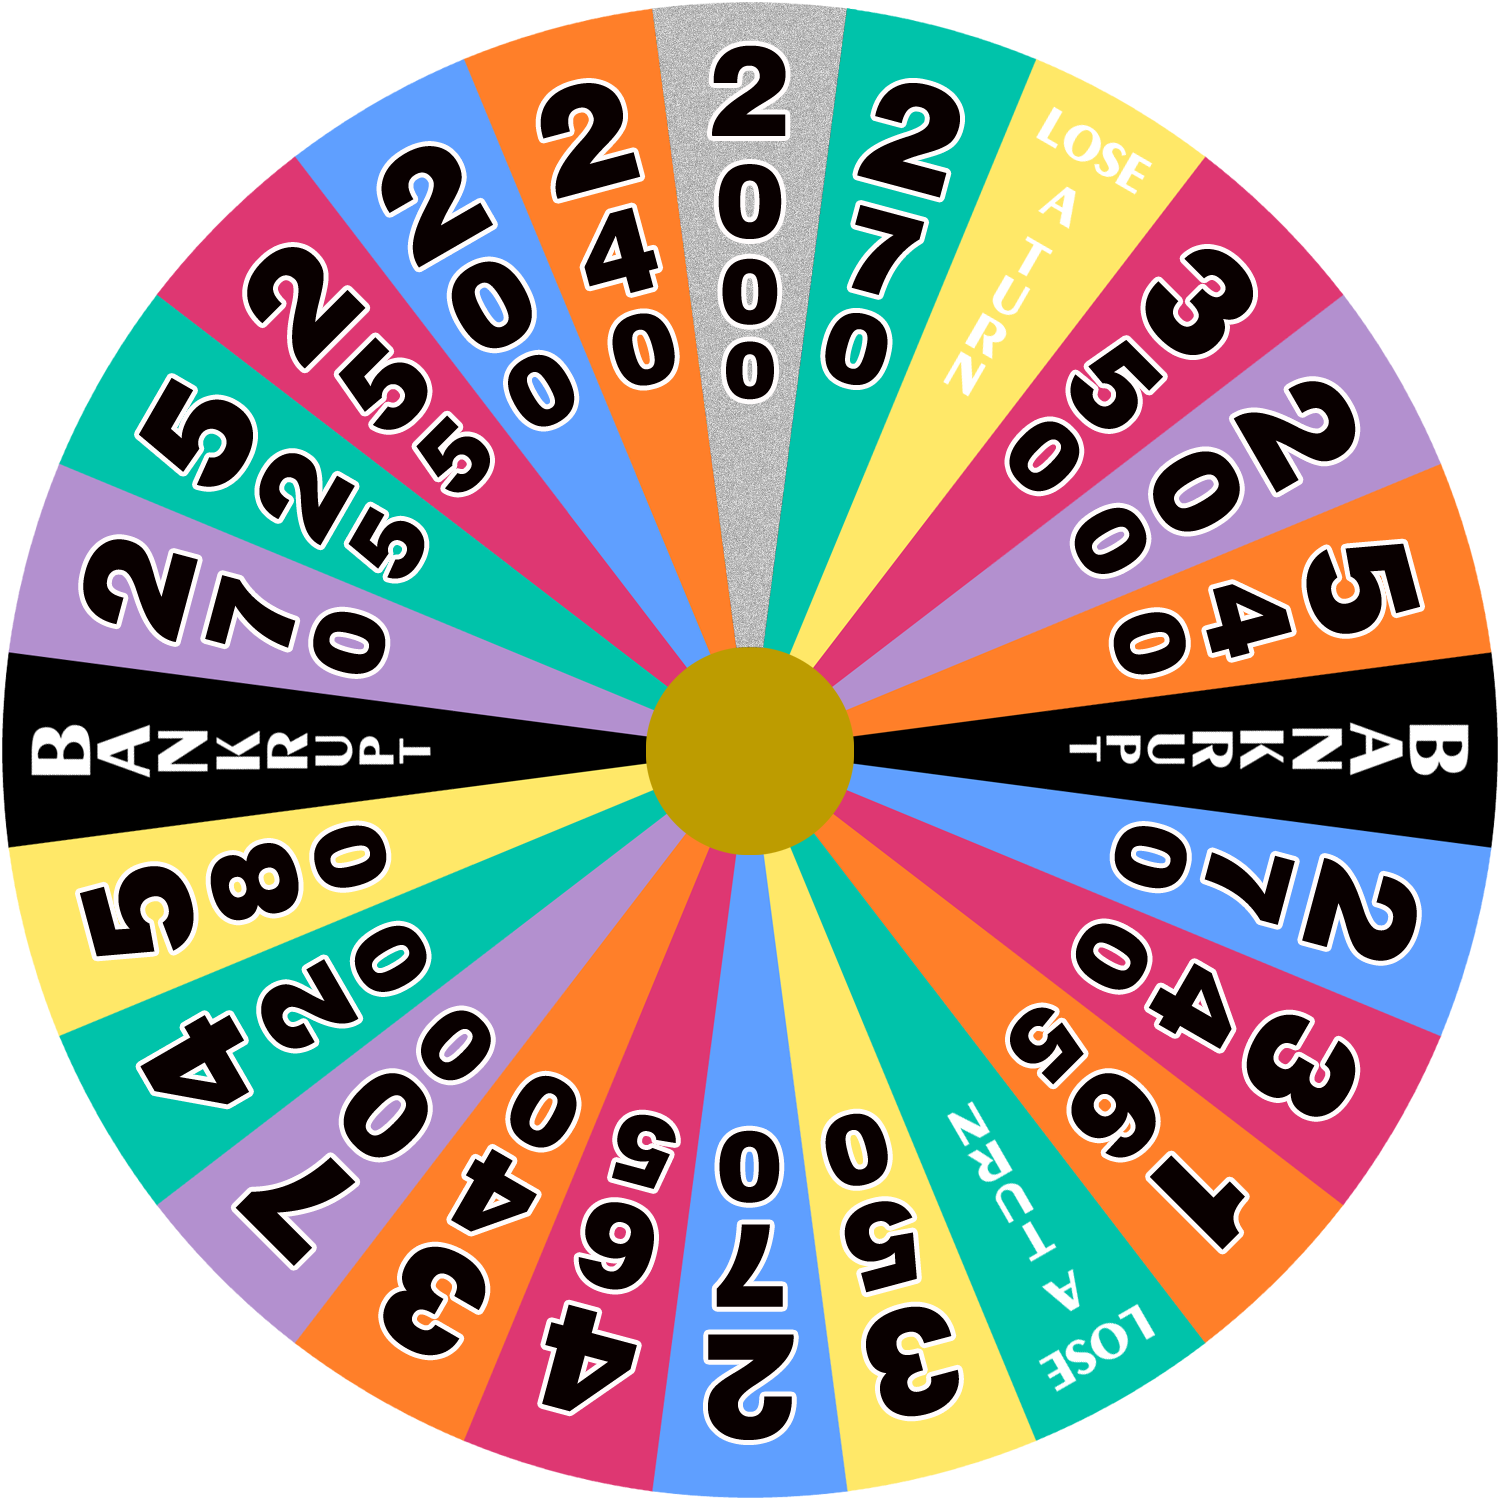 Australian Wheel of Fortune - 1996 - round 3 by wheelgenius